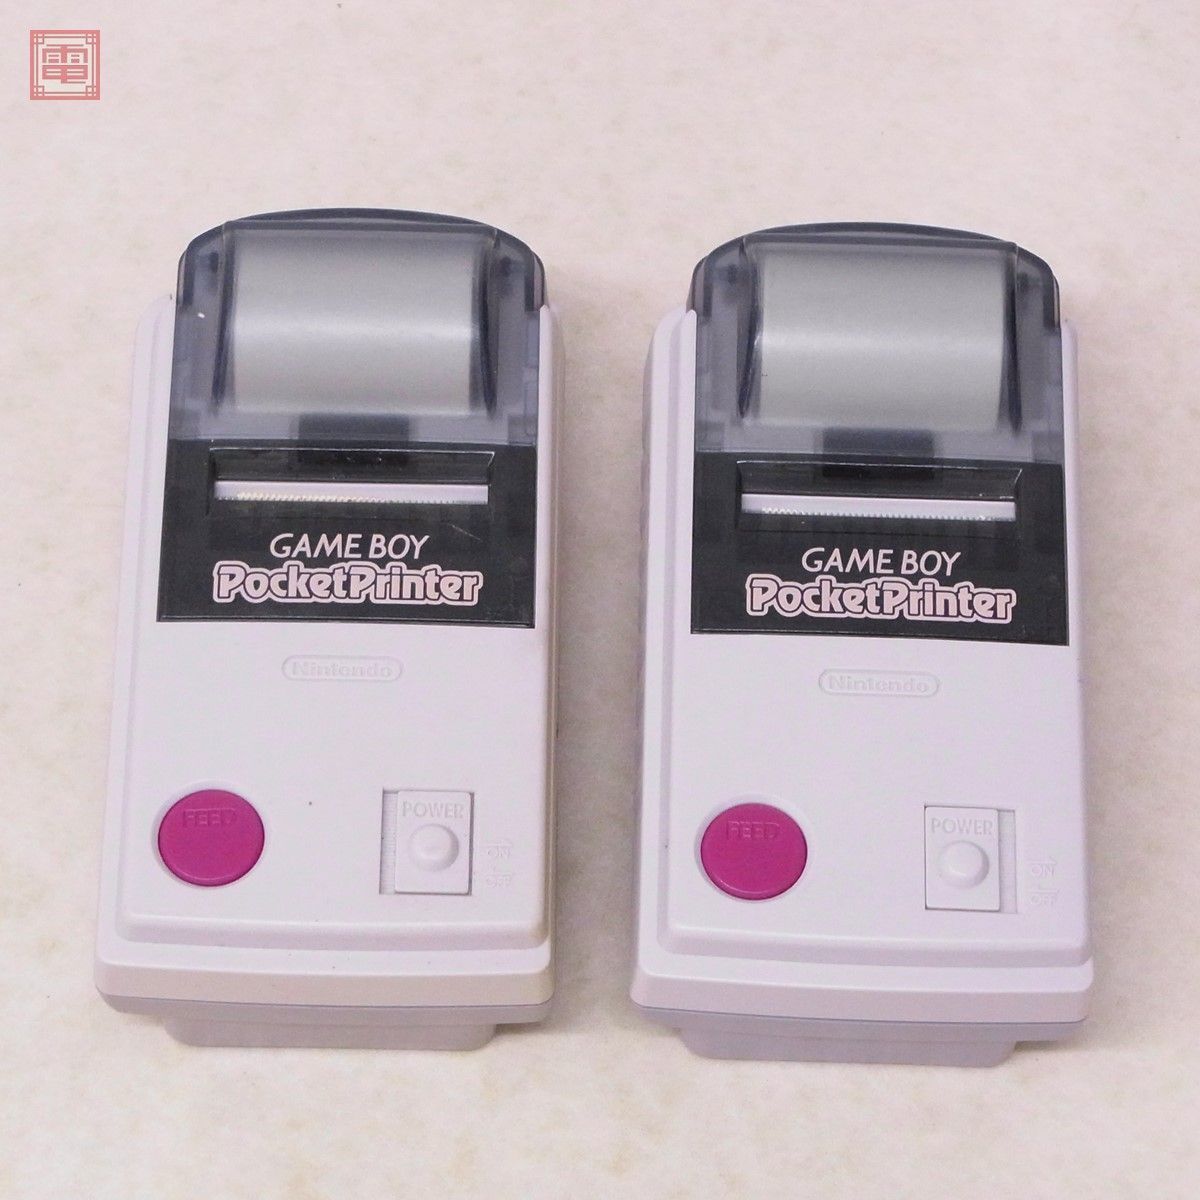 GB ゲームボーイ ポケットプリンター MGB-007 計2個セット GAMEBOY Pocket Printer Nintendo ニンテンドー 任天堂【10の画像1